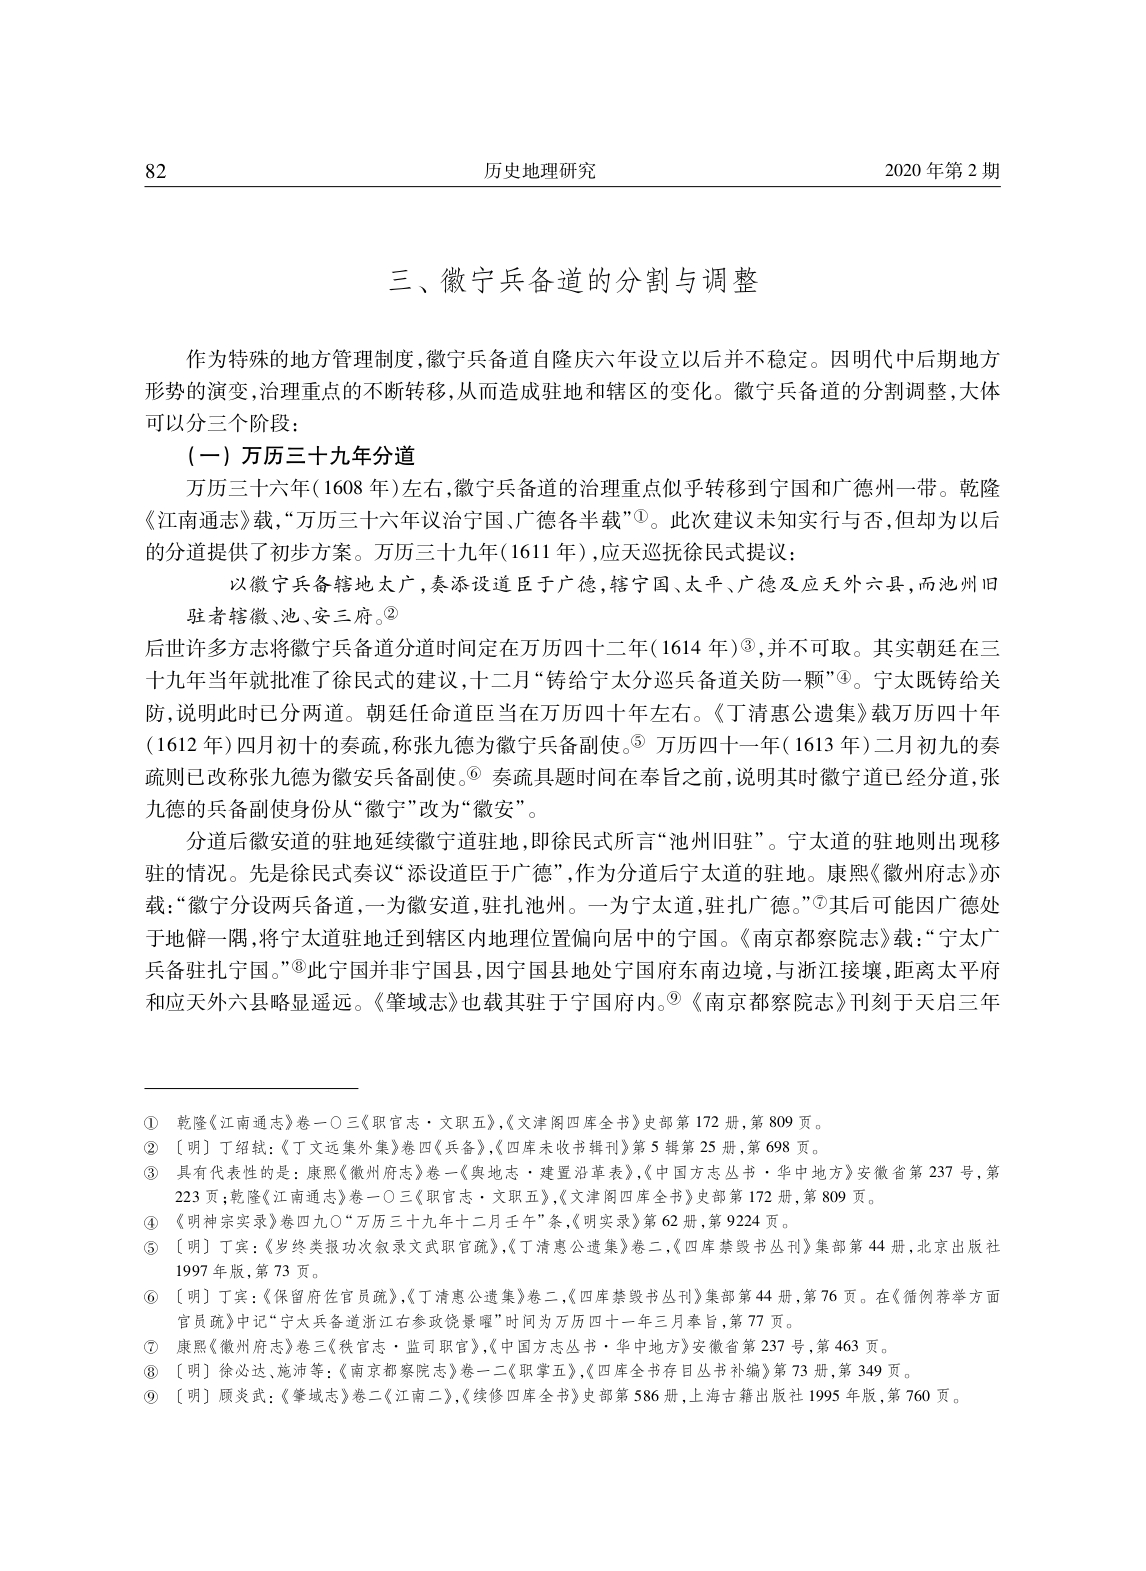 明代安庆、徽州地区兵备道分合演变考论_page-0011.jpg